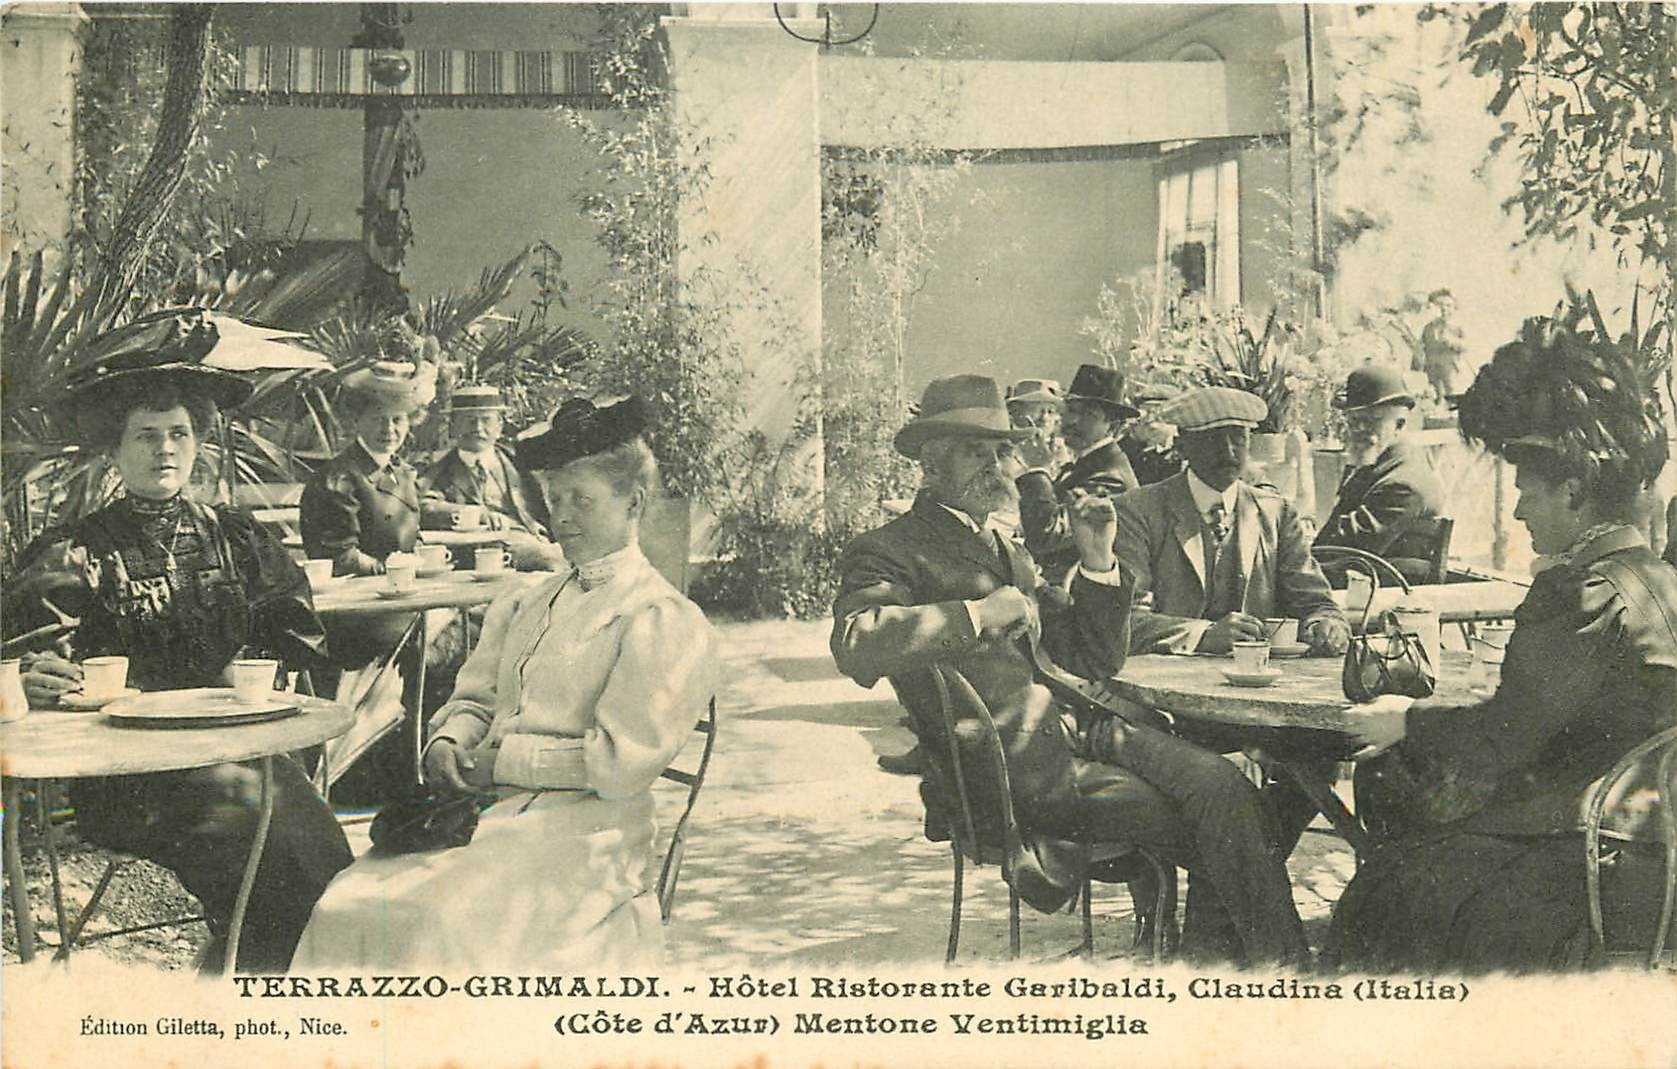 WW MENTONE VENTIMIGLIA. Terrazzo-Grimaldi Hôtel Ristorante Garibaldi Claudina